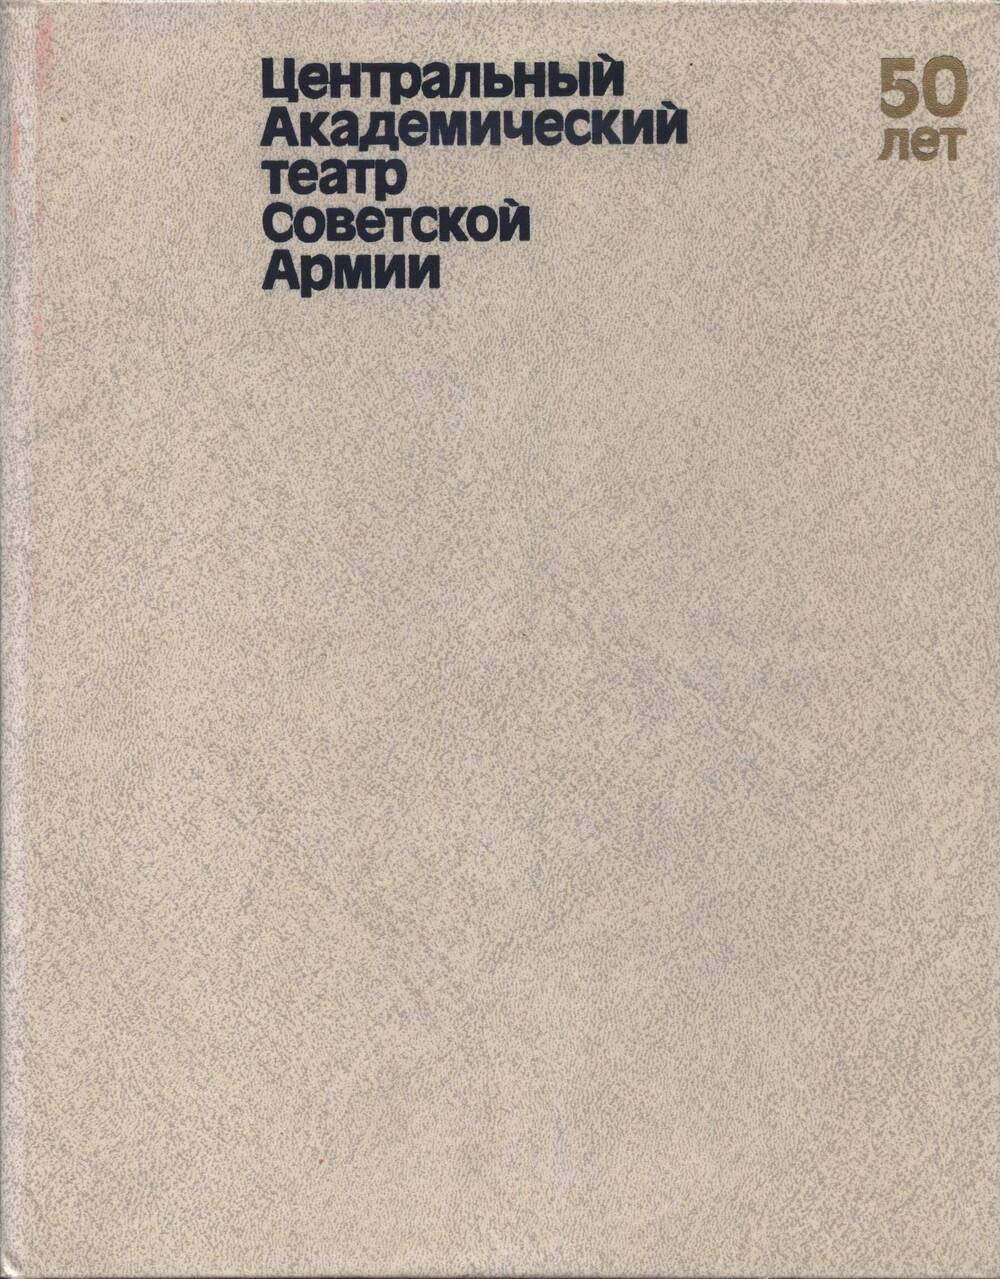 Книга-альбом. Центральный Академический театр Советской Армии. 50 лет.